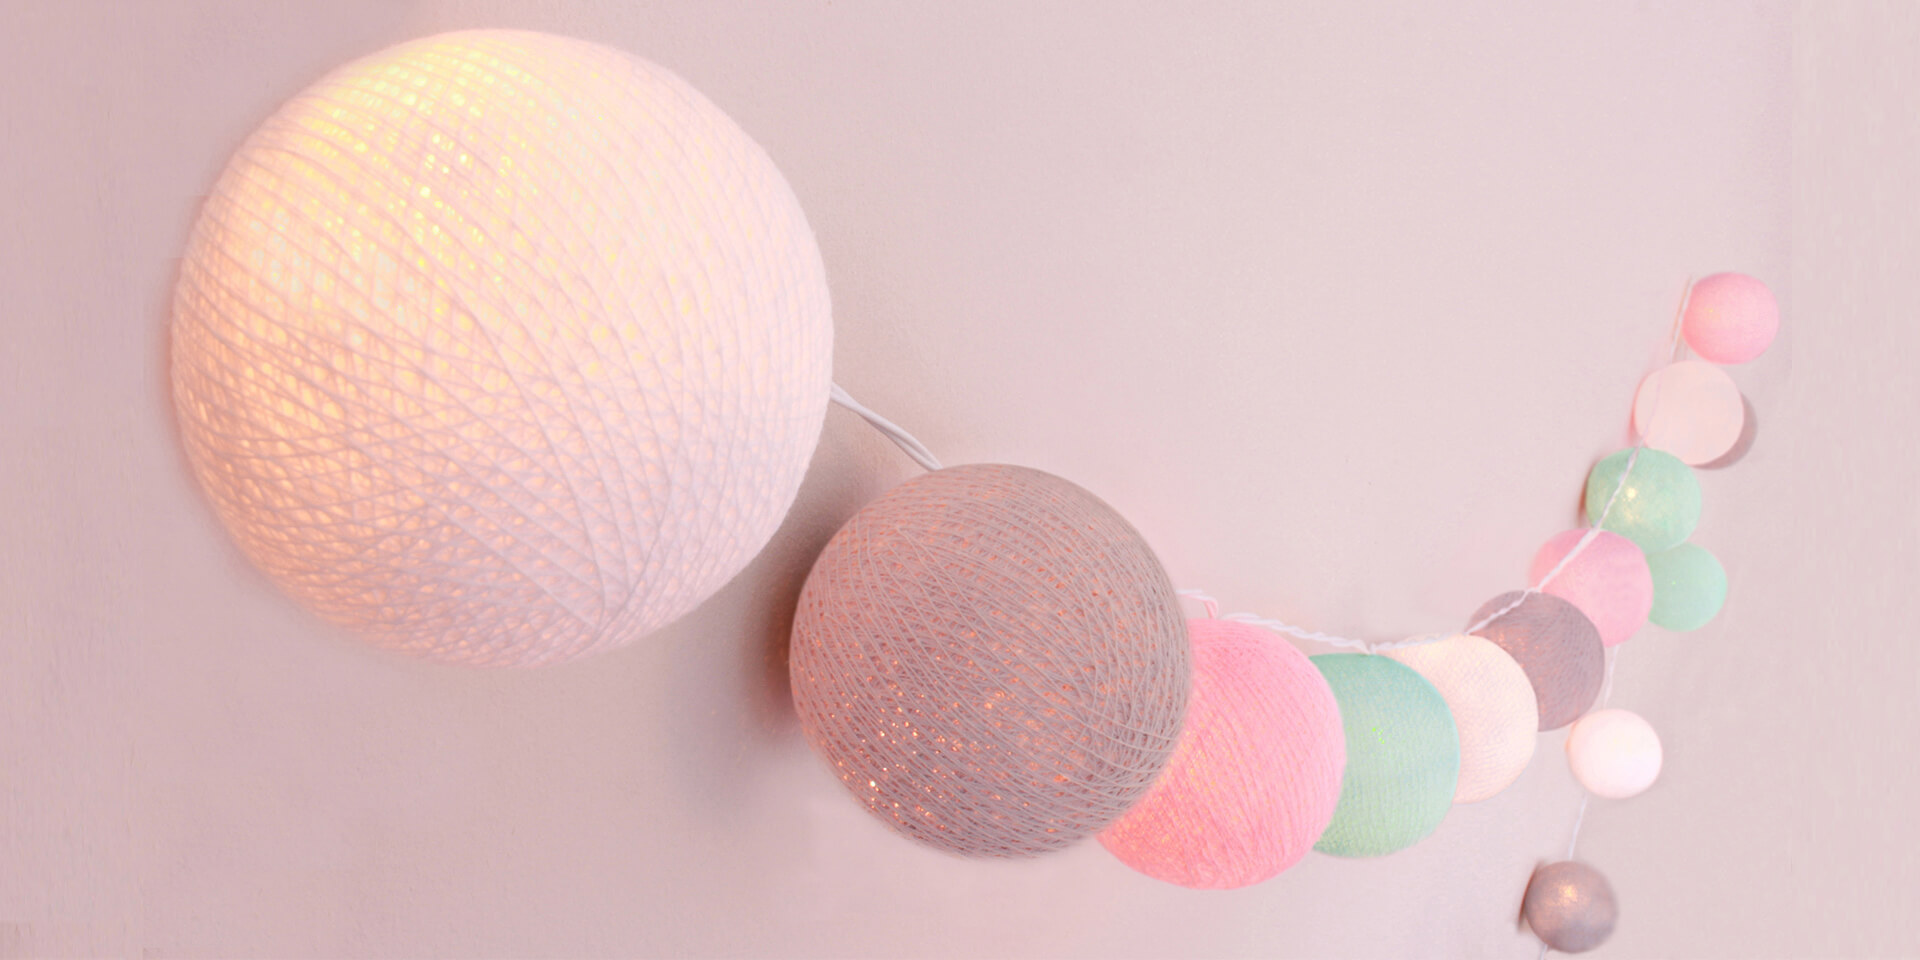 Handgearbeitete LED Lichterkette mit Kugeln aus Baumwolle. Cotton Ball Lights in Weiß, Grau, Rosa und Mint.